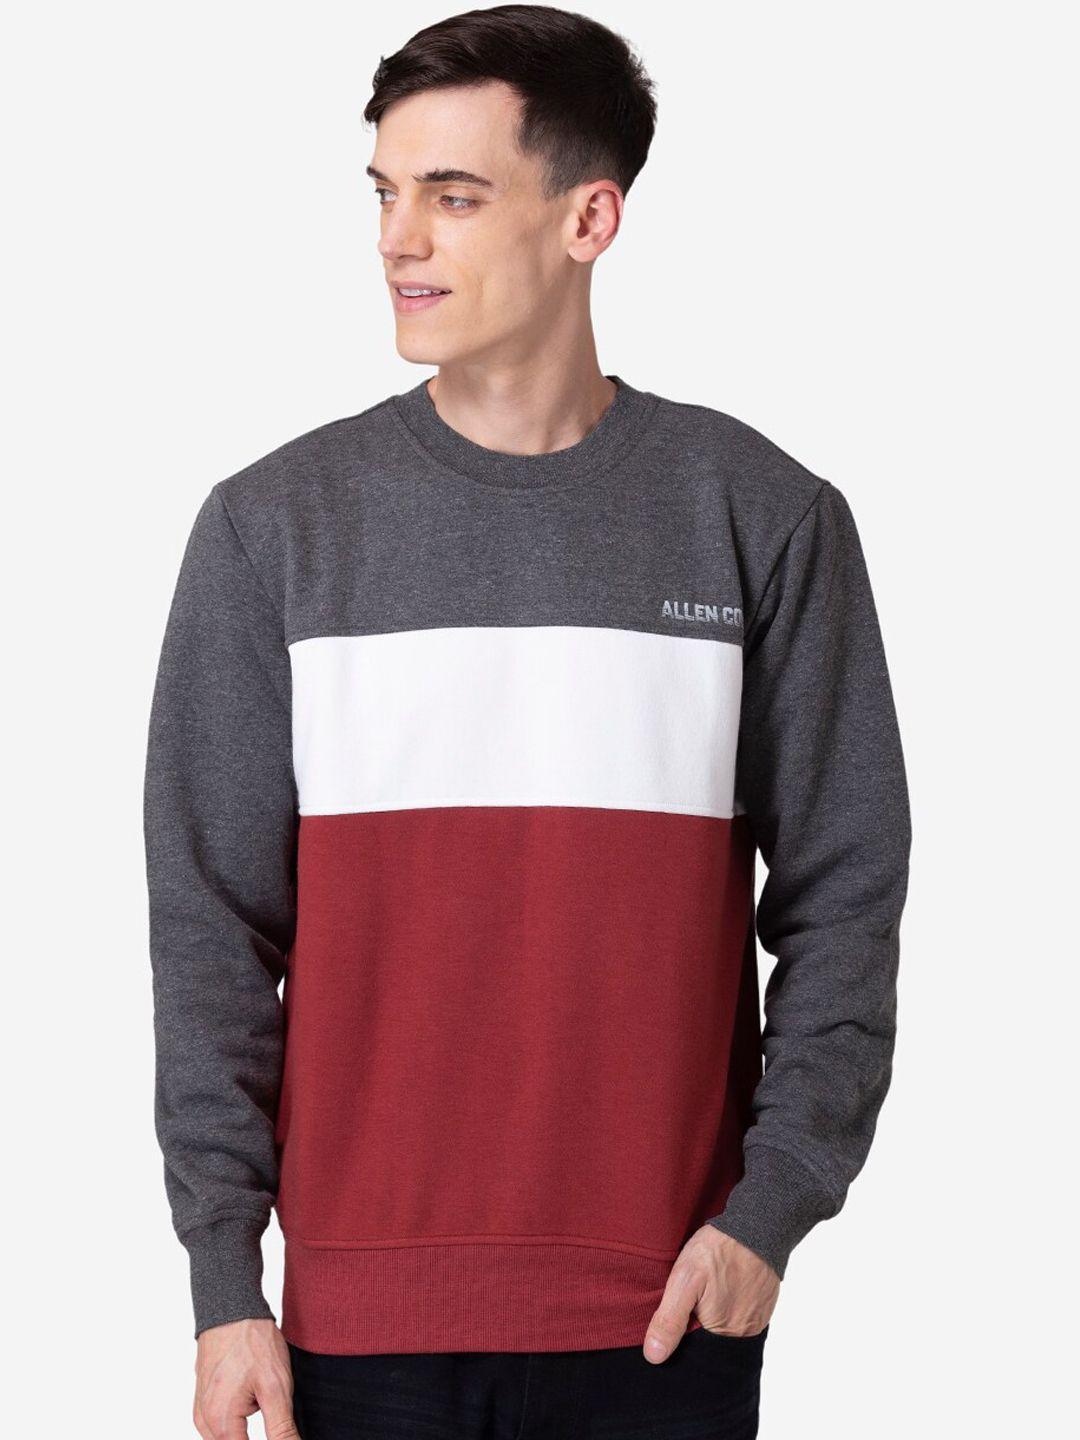 allen-cooper-men-grey-&-red-colourblocked-sweatshirt